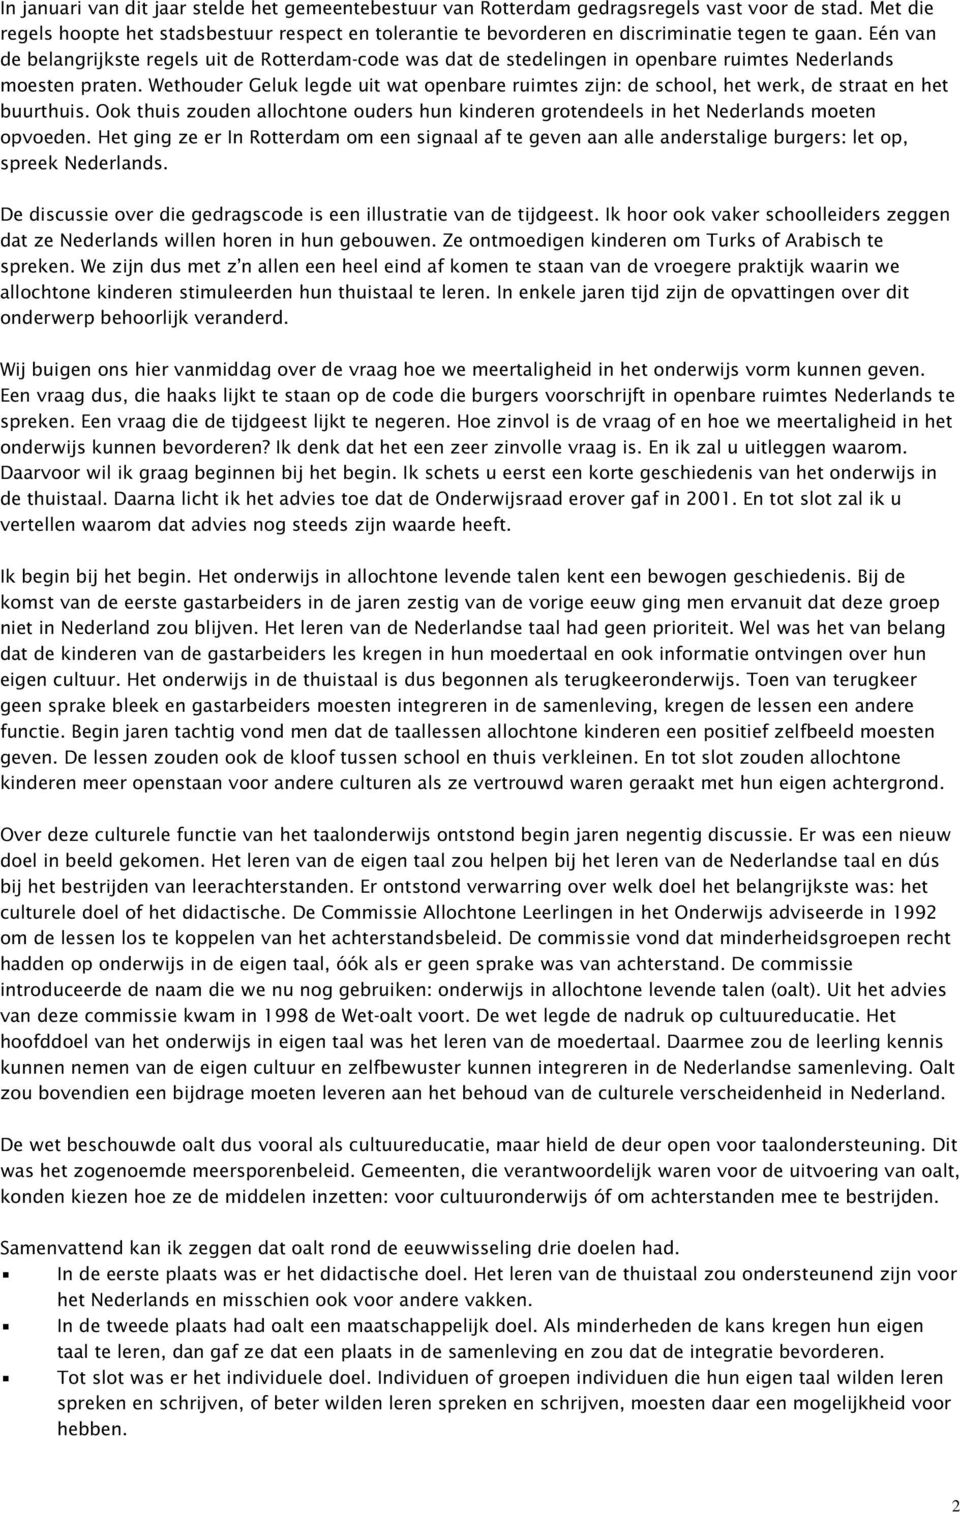 Eén van de belangrijkste regels uit de Rotterdam-code was dat de stedelingen in openbare ruimtes Nederlands moesten praten.